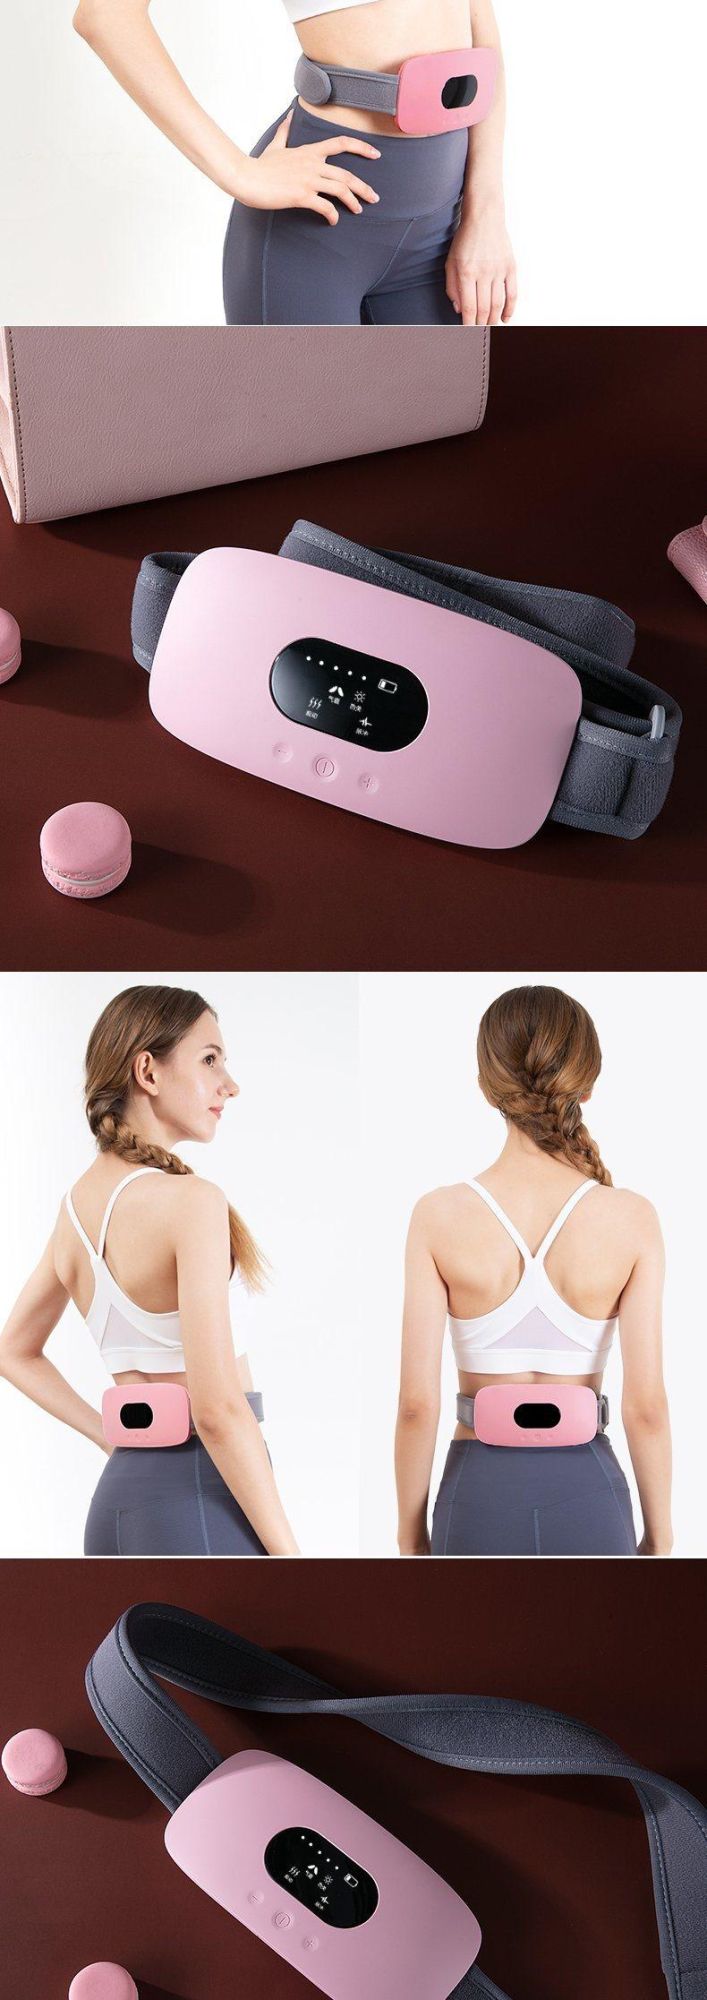 Hezheng Far Infrared Stomach Abdomen Support Waist Band Heating Protector Belt for Women